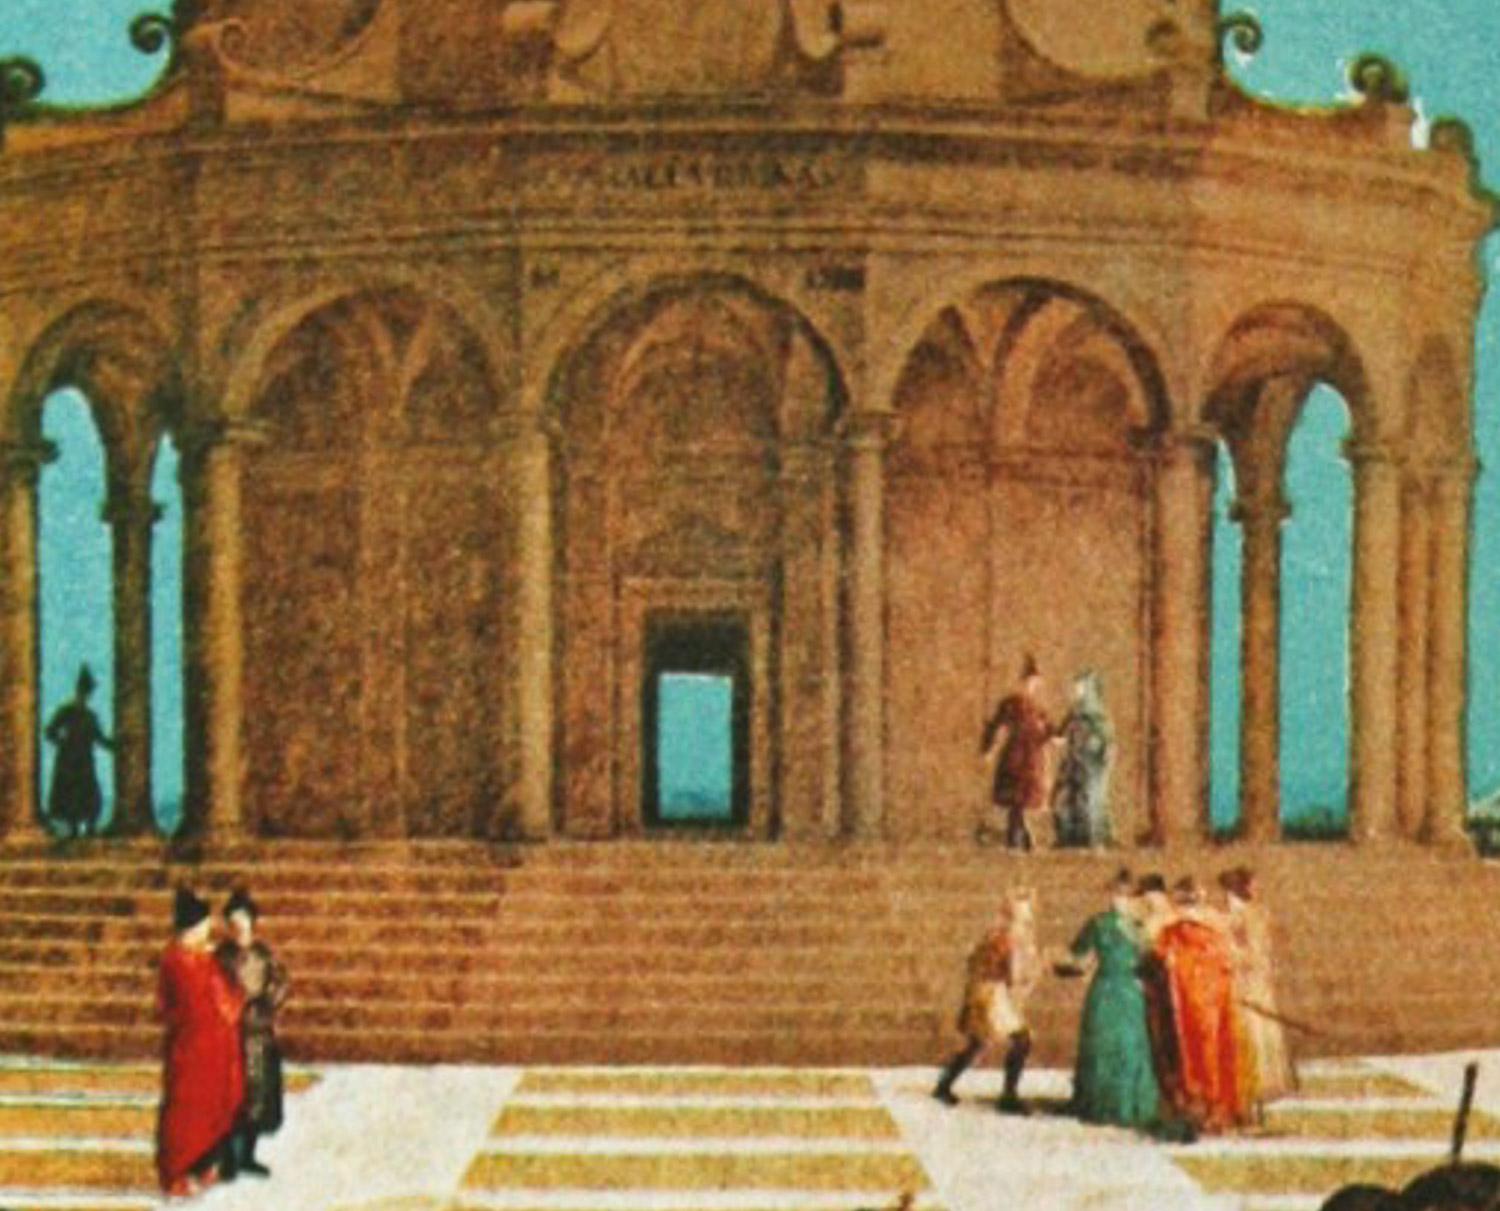 Le Marriage de la Vierge von Salvador Dali, interpretiert nach dem Originalgemälde von Raffael  ist eine von sechs Grafiken aus der Serie Changes in Great Masterpieces, die 1974 von Sidney Lucas veröffentlicht wurde. Meister Dali hat uns ein höchst